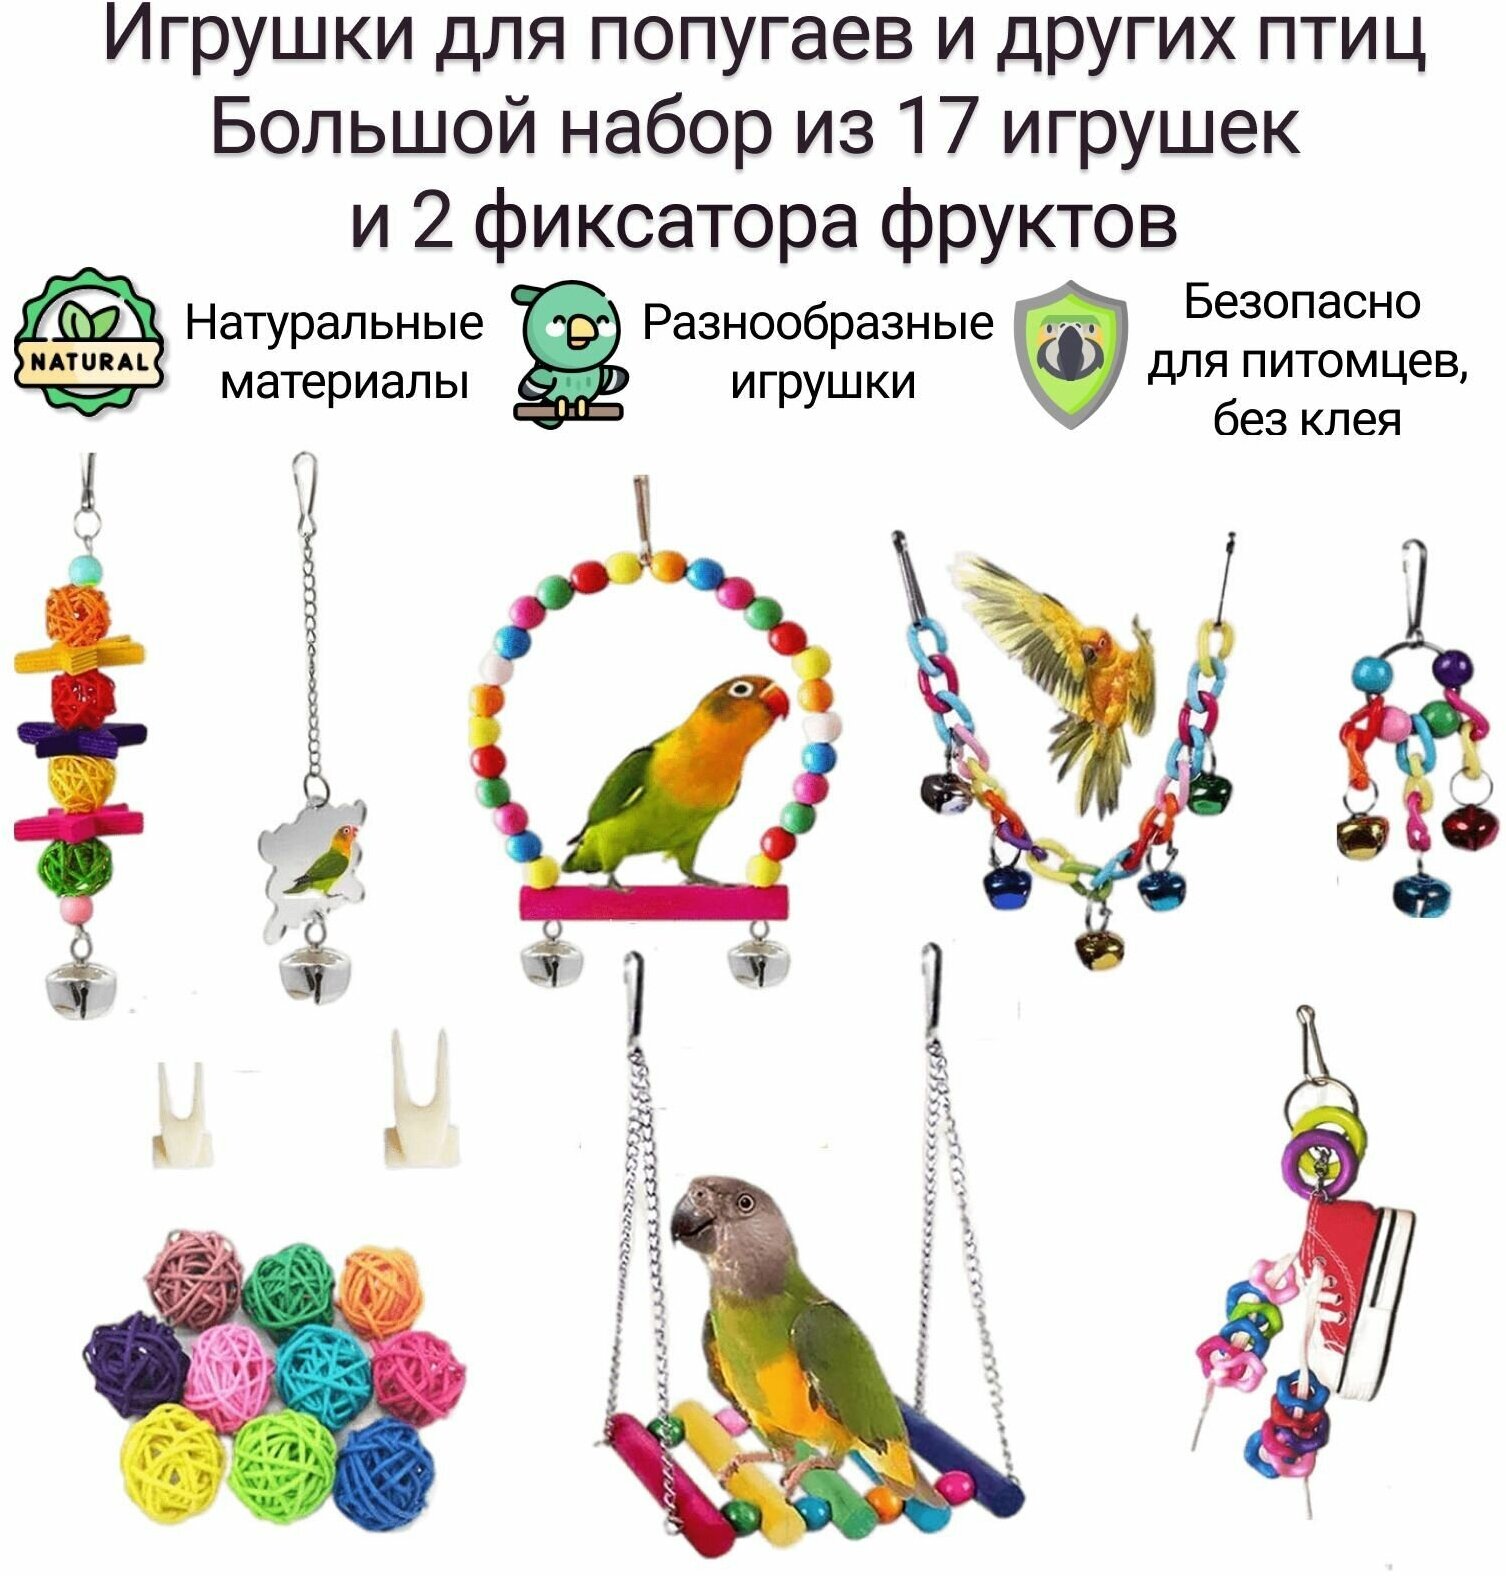 Игрушки для попугаев. Набор из 17 игрушек и 2 держателей фруктов